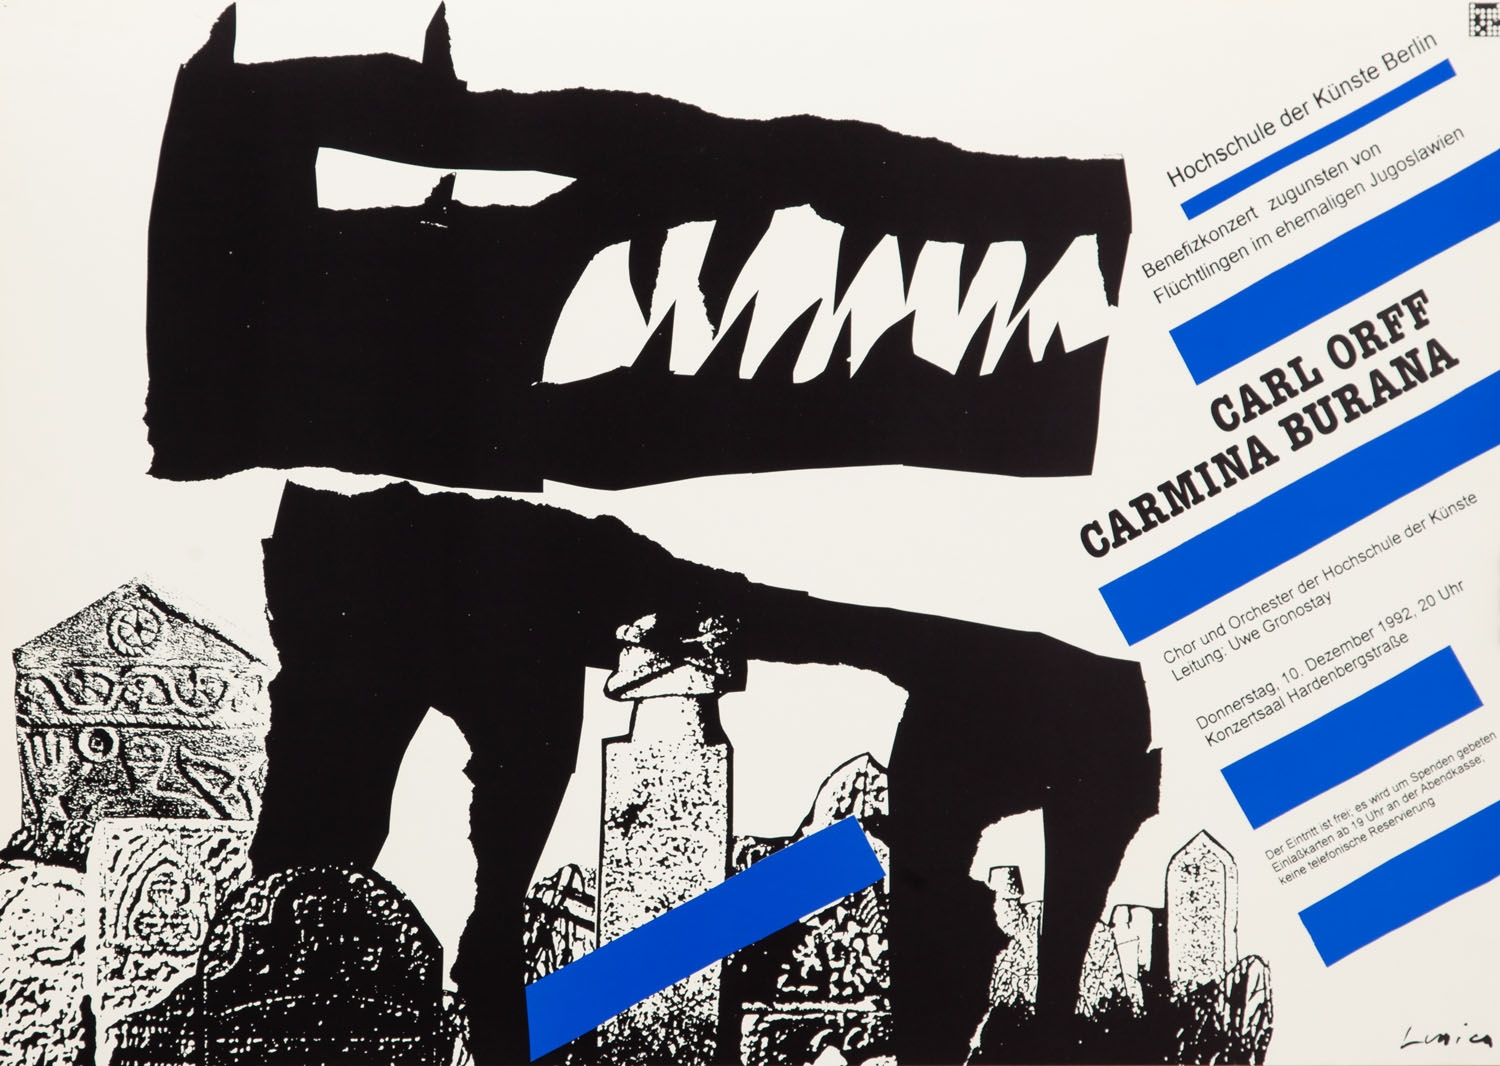 Plakat do opery "Carmina Burana" Orffa Carla by Jan Lenica, 1992